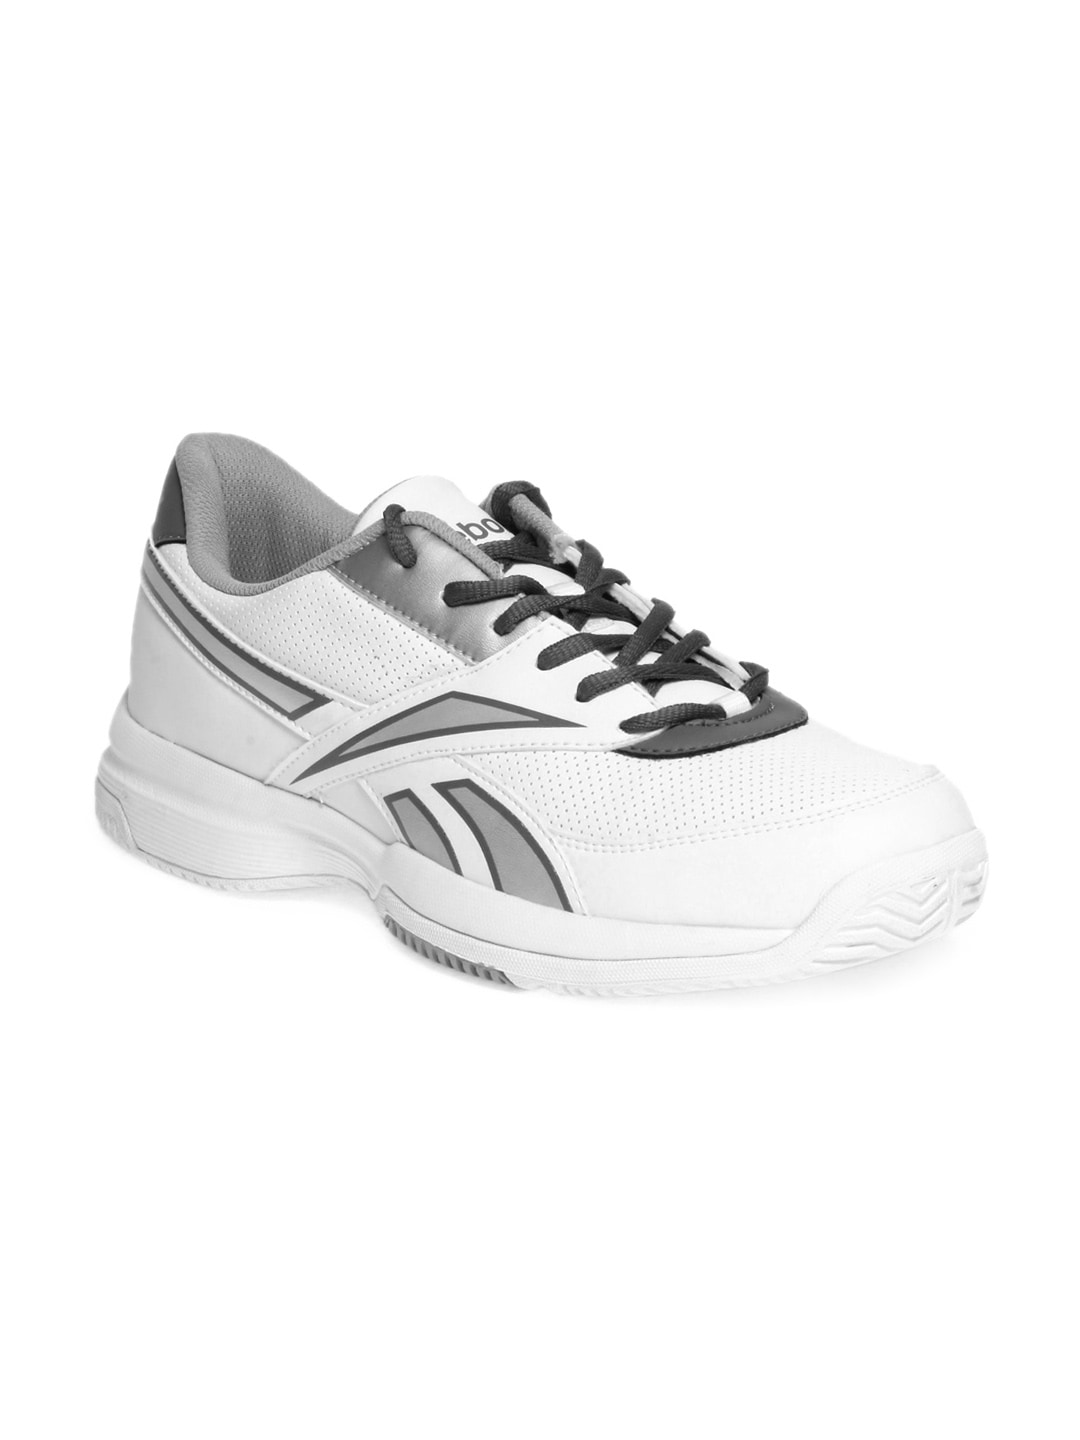 Reebok Men White Sports Shoes